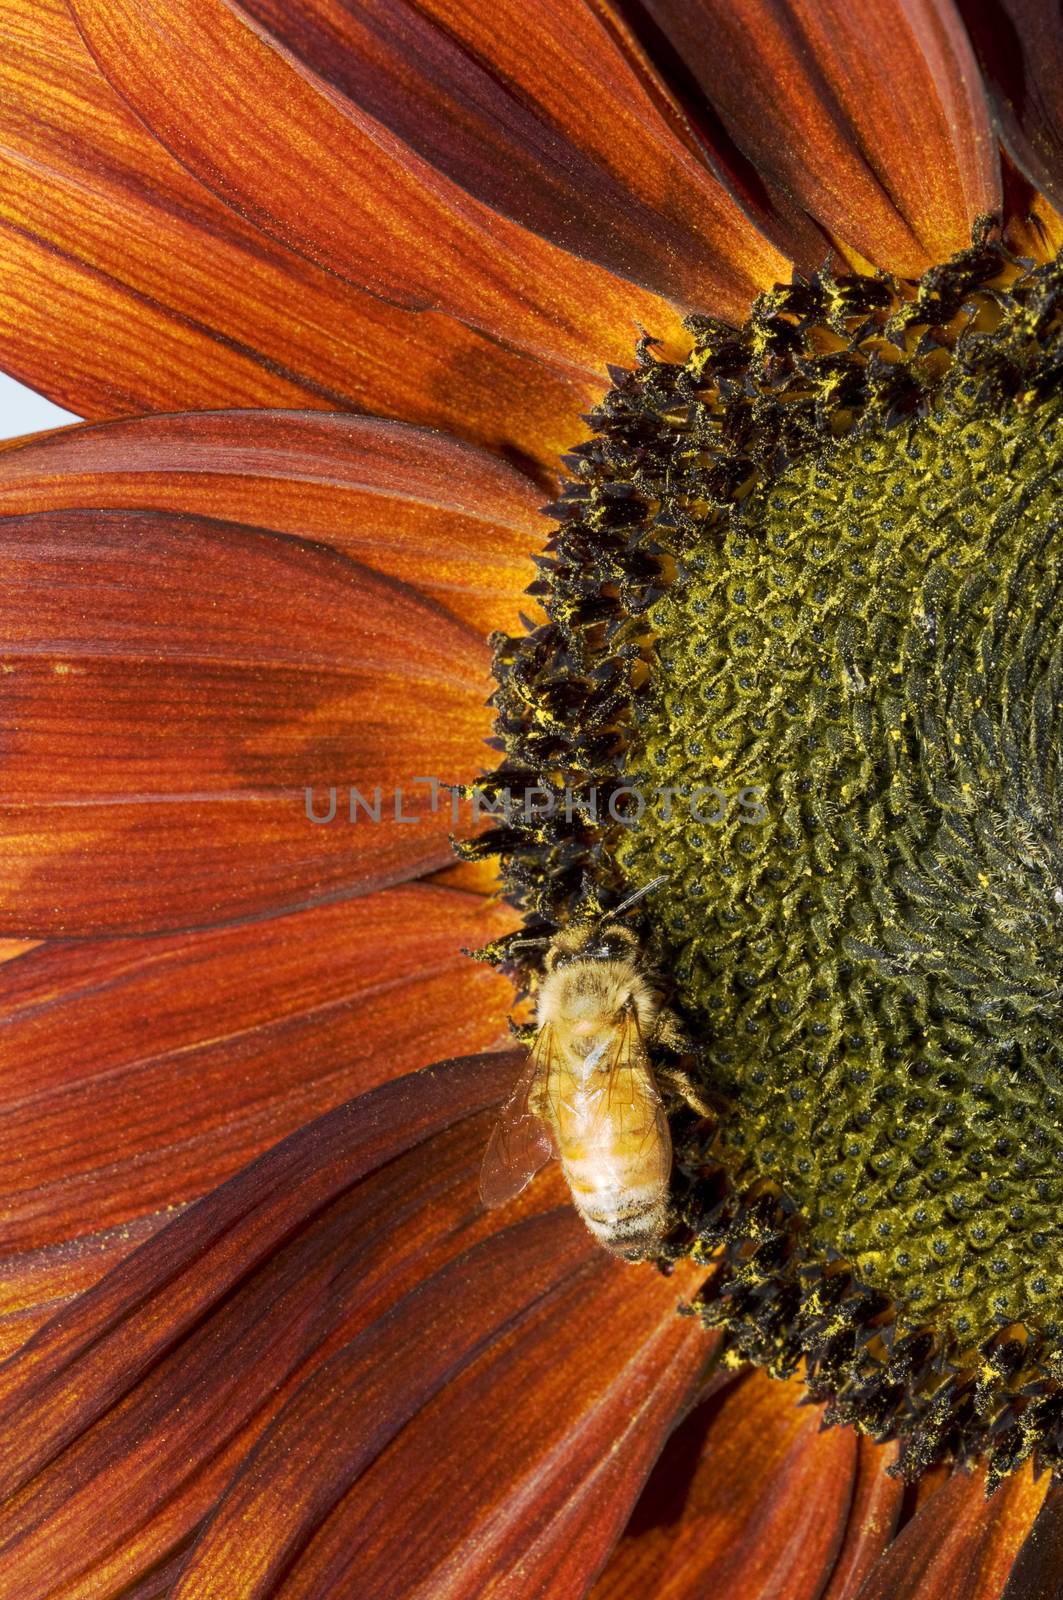 Western honey bee or European honey bee (Apis mellifera) by Njean